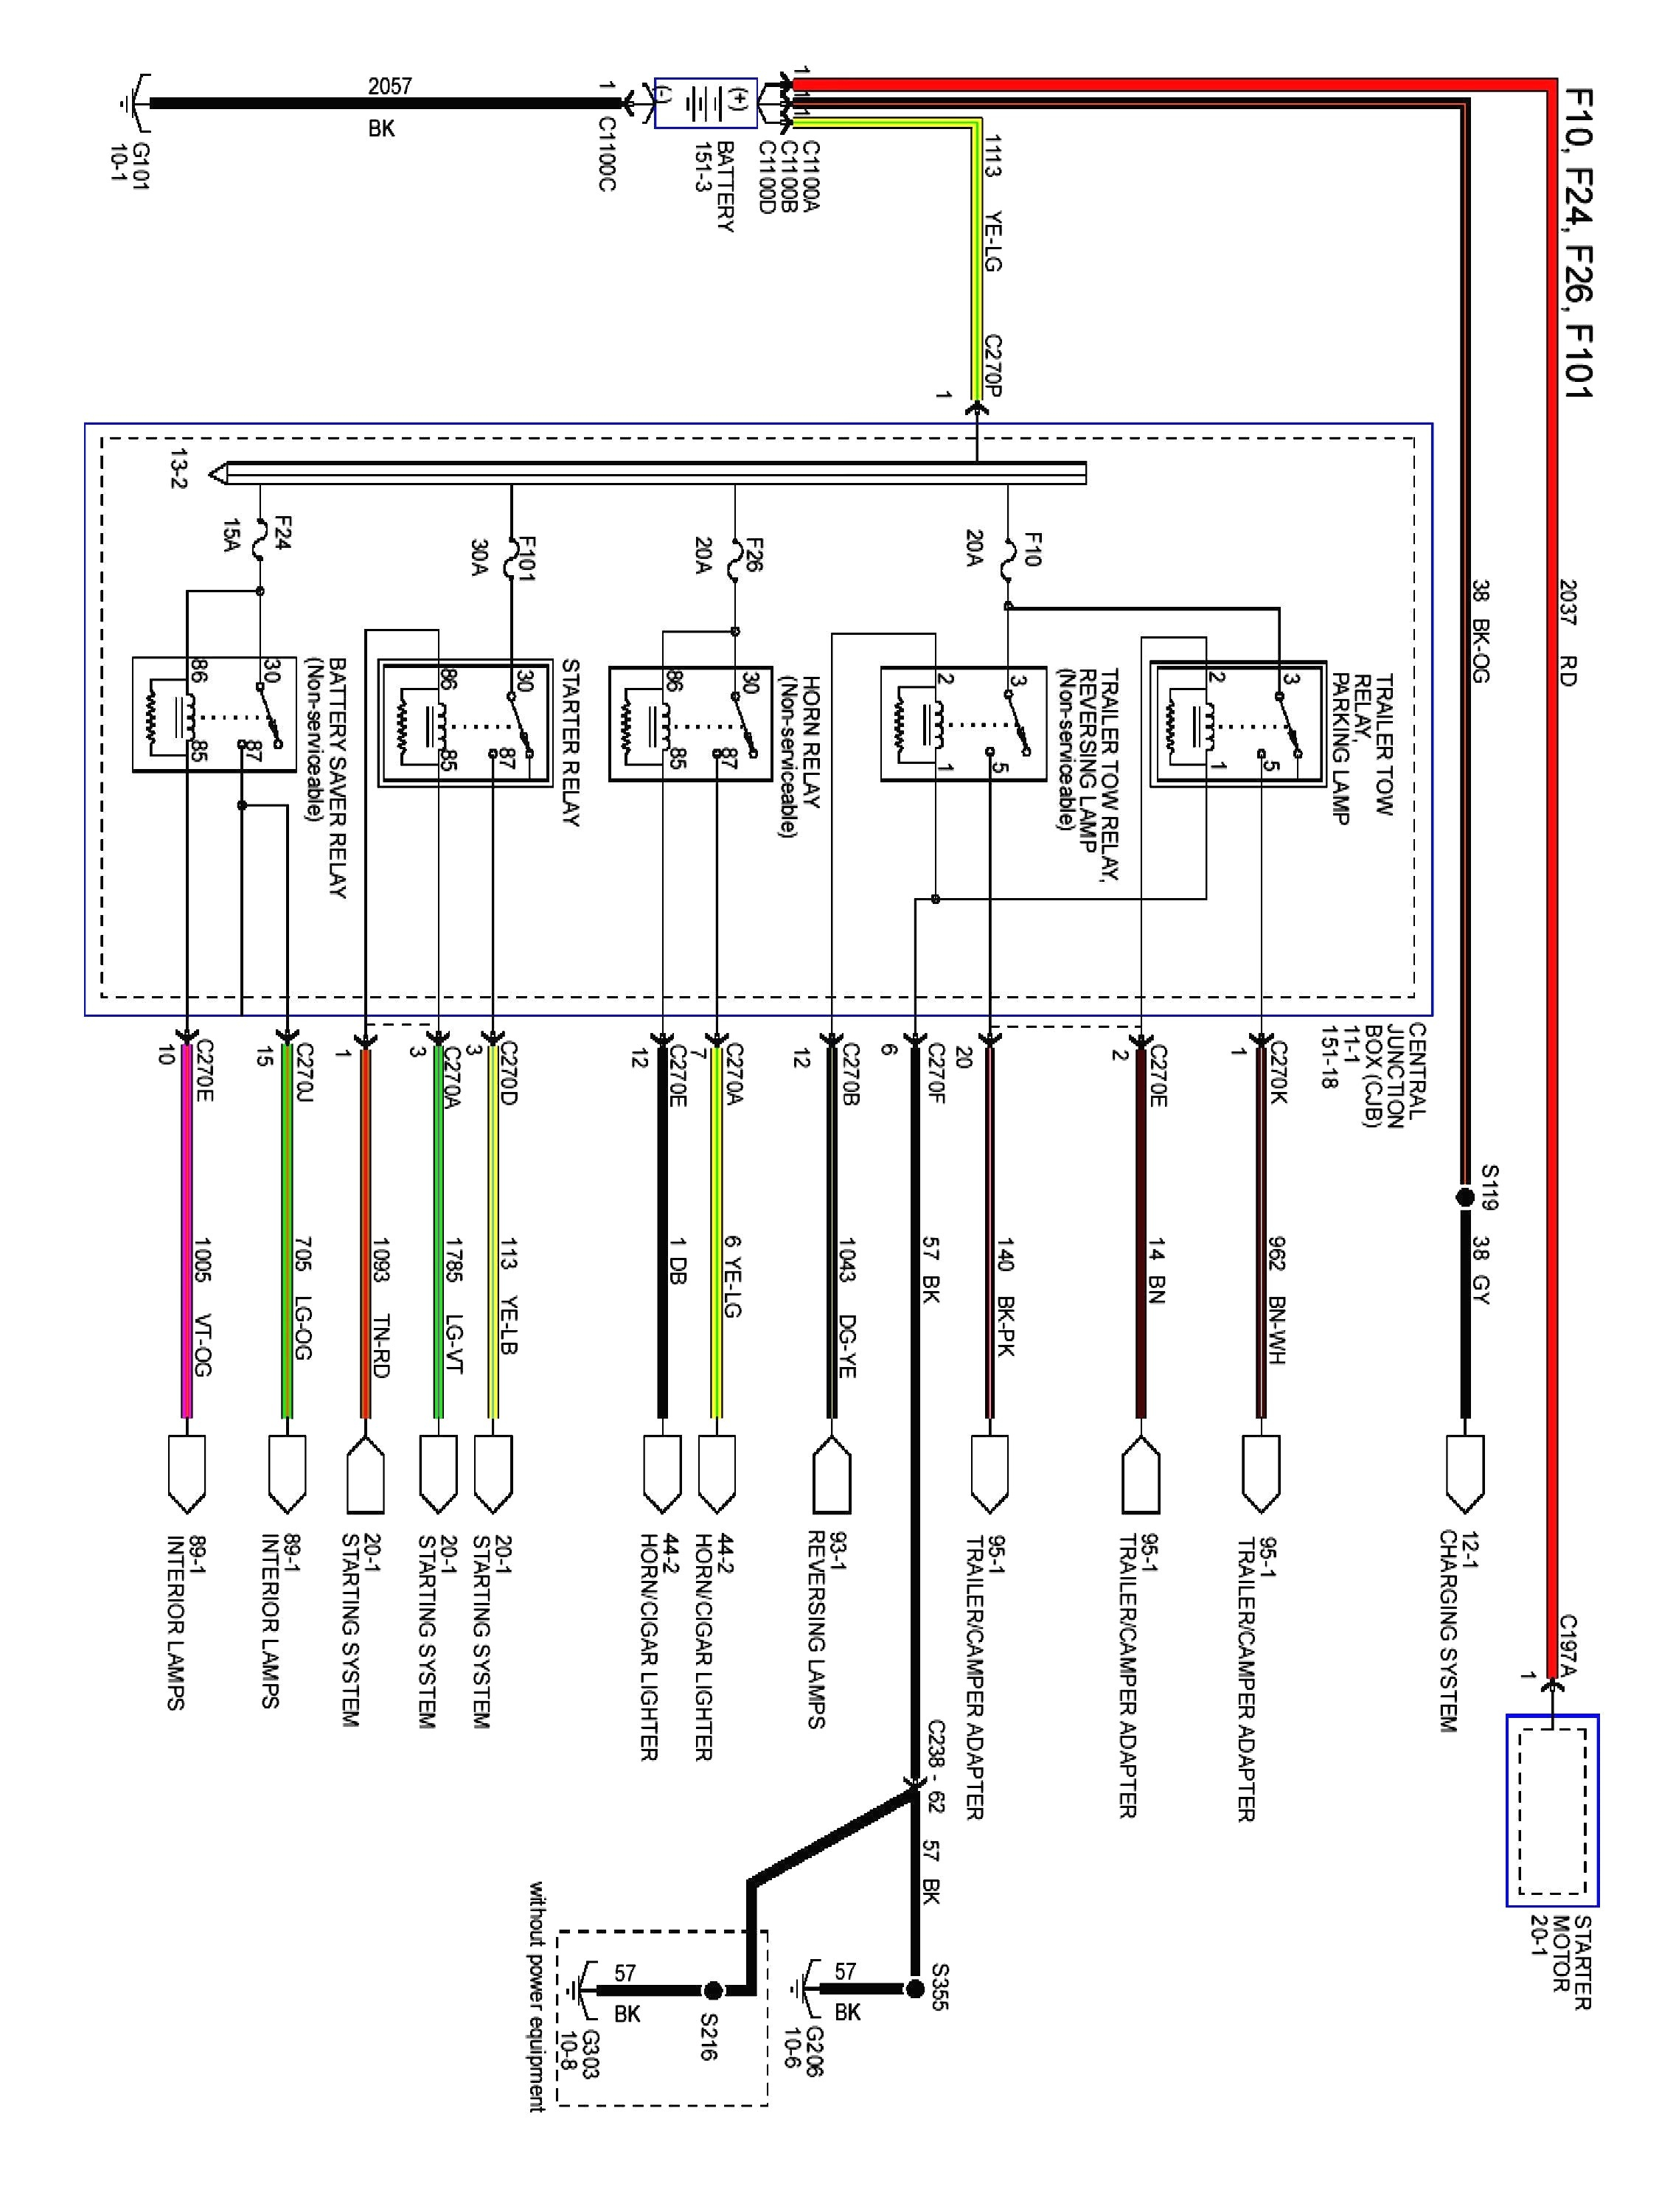 hmsl wiring diagram wiring diagramshmsl wiring diagram wiring diagram centre hmsl wiring diagram